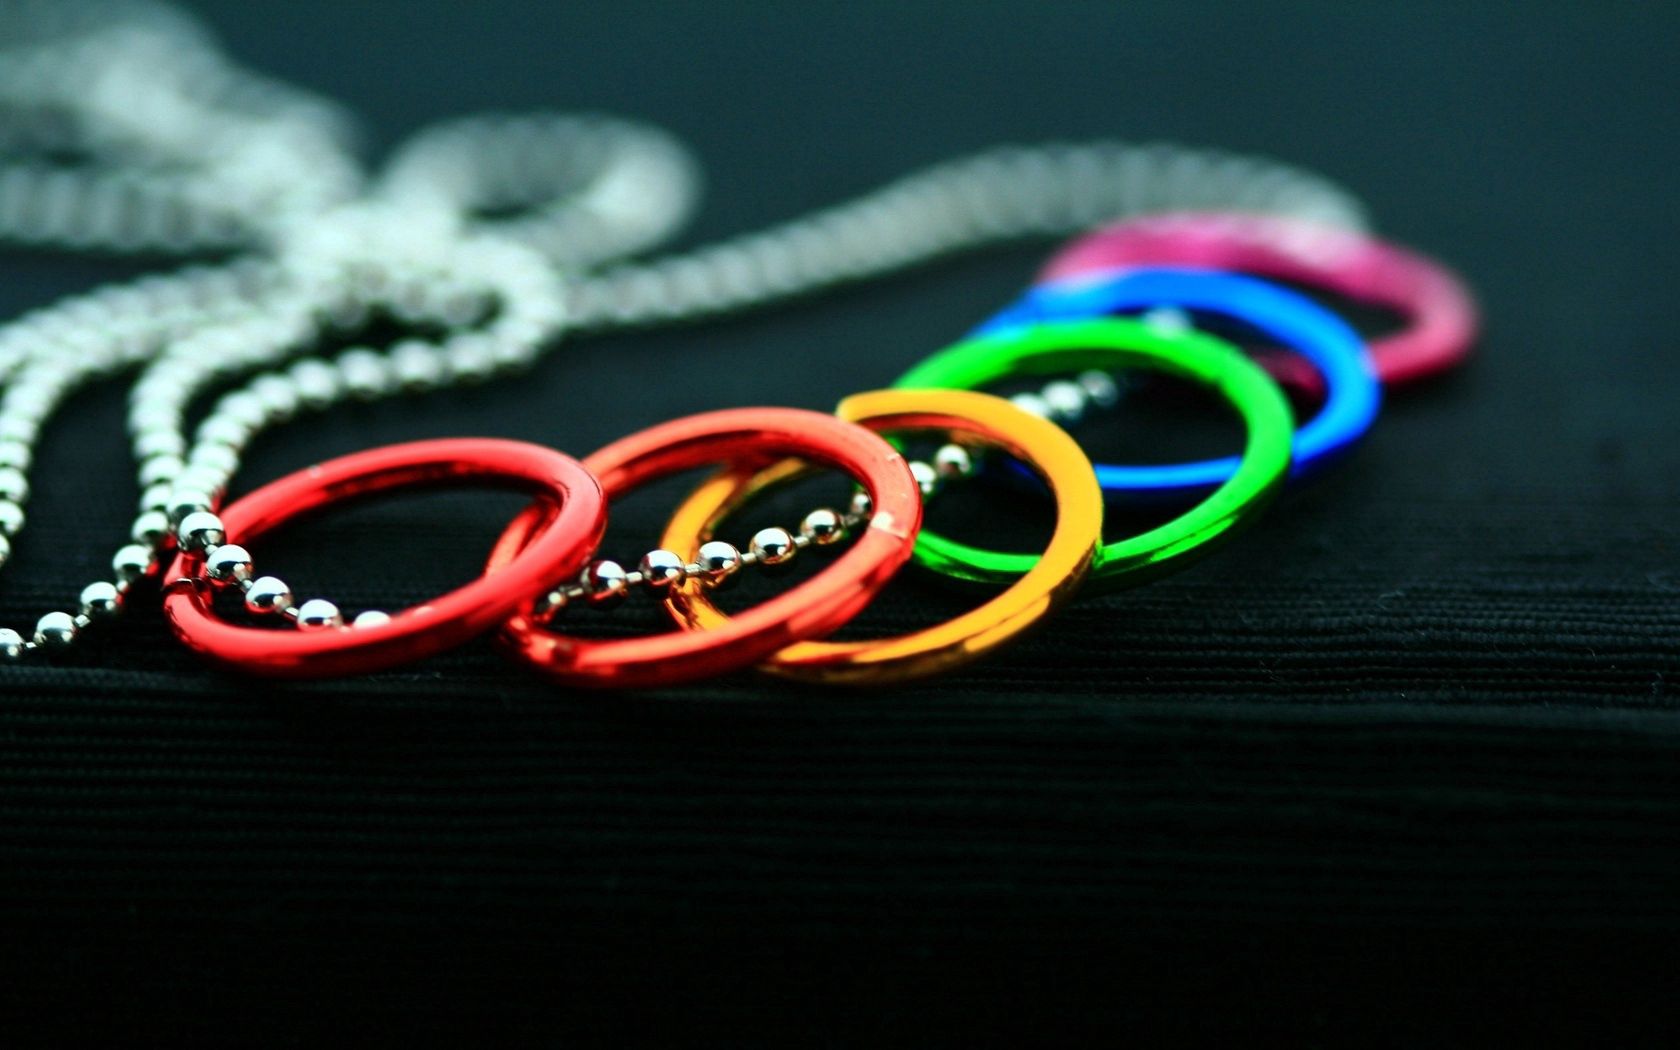 rings, miscellanea, miscellaneous, decoration, chain, bracelets